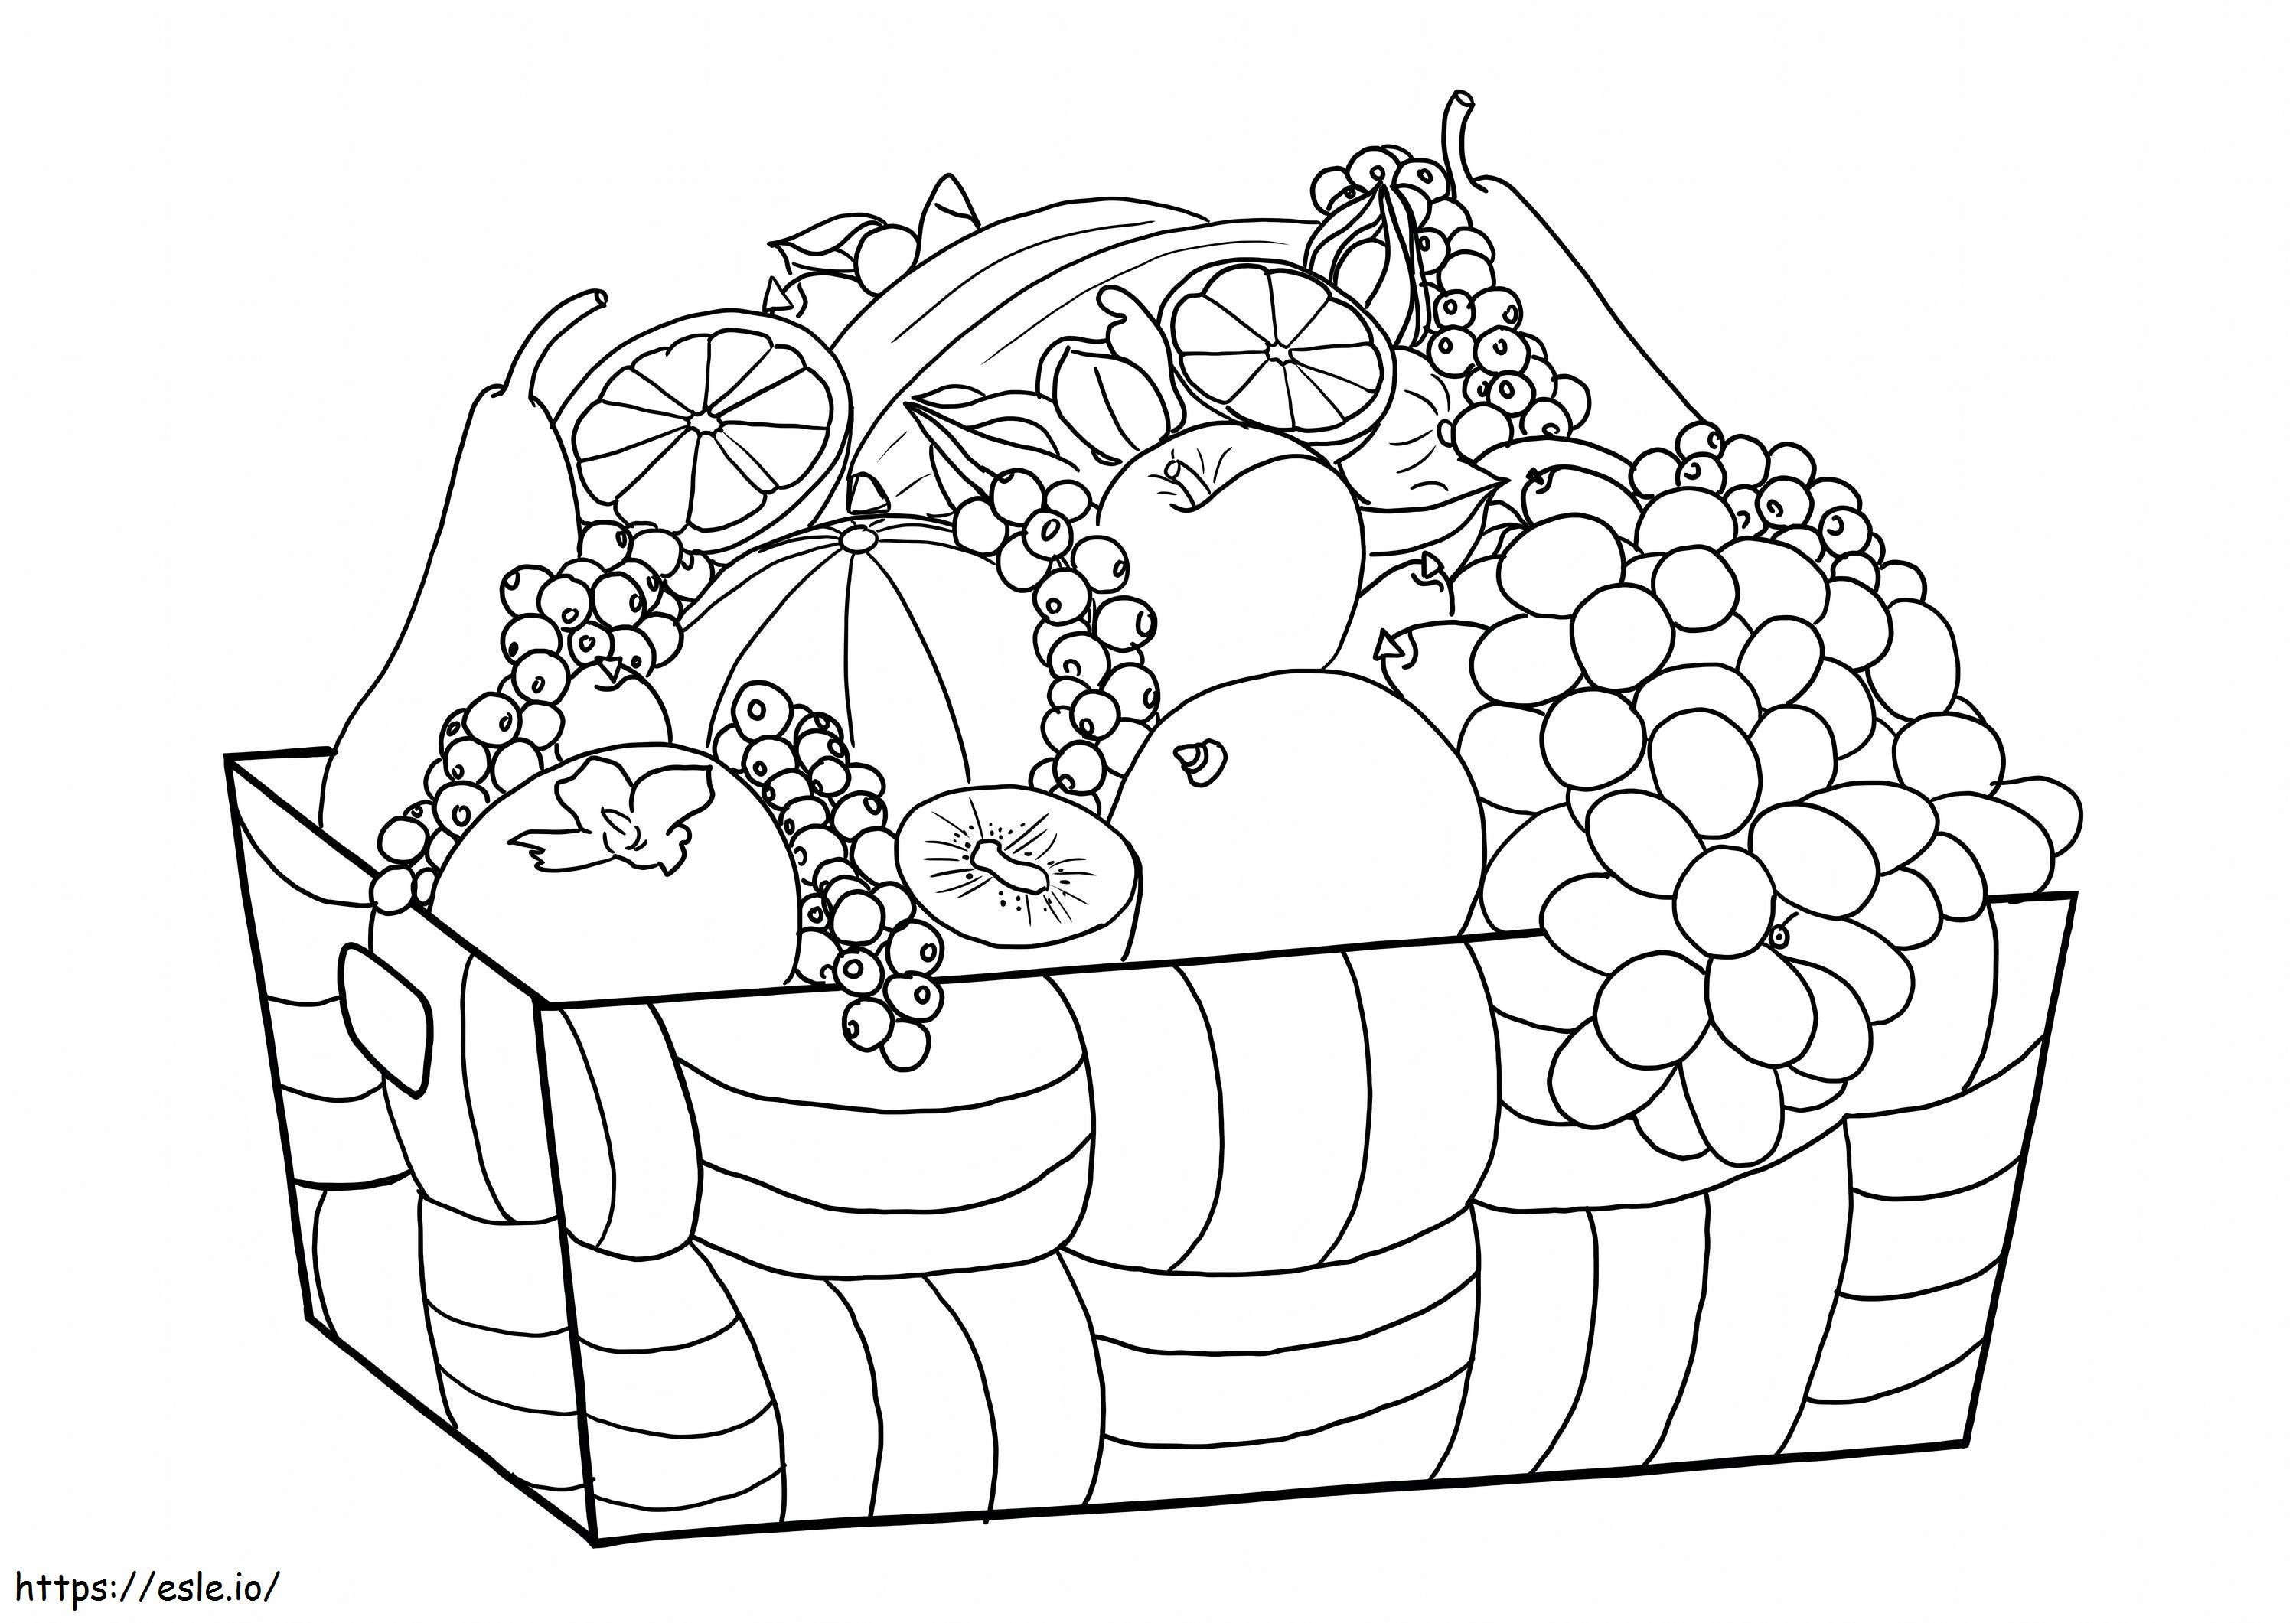 Obst und Gemüse im Karton skaliert ausmalbilder